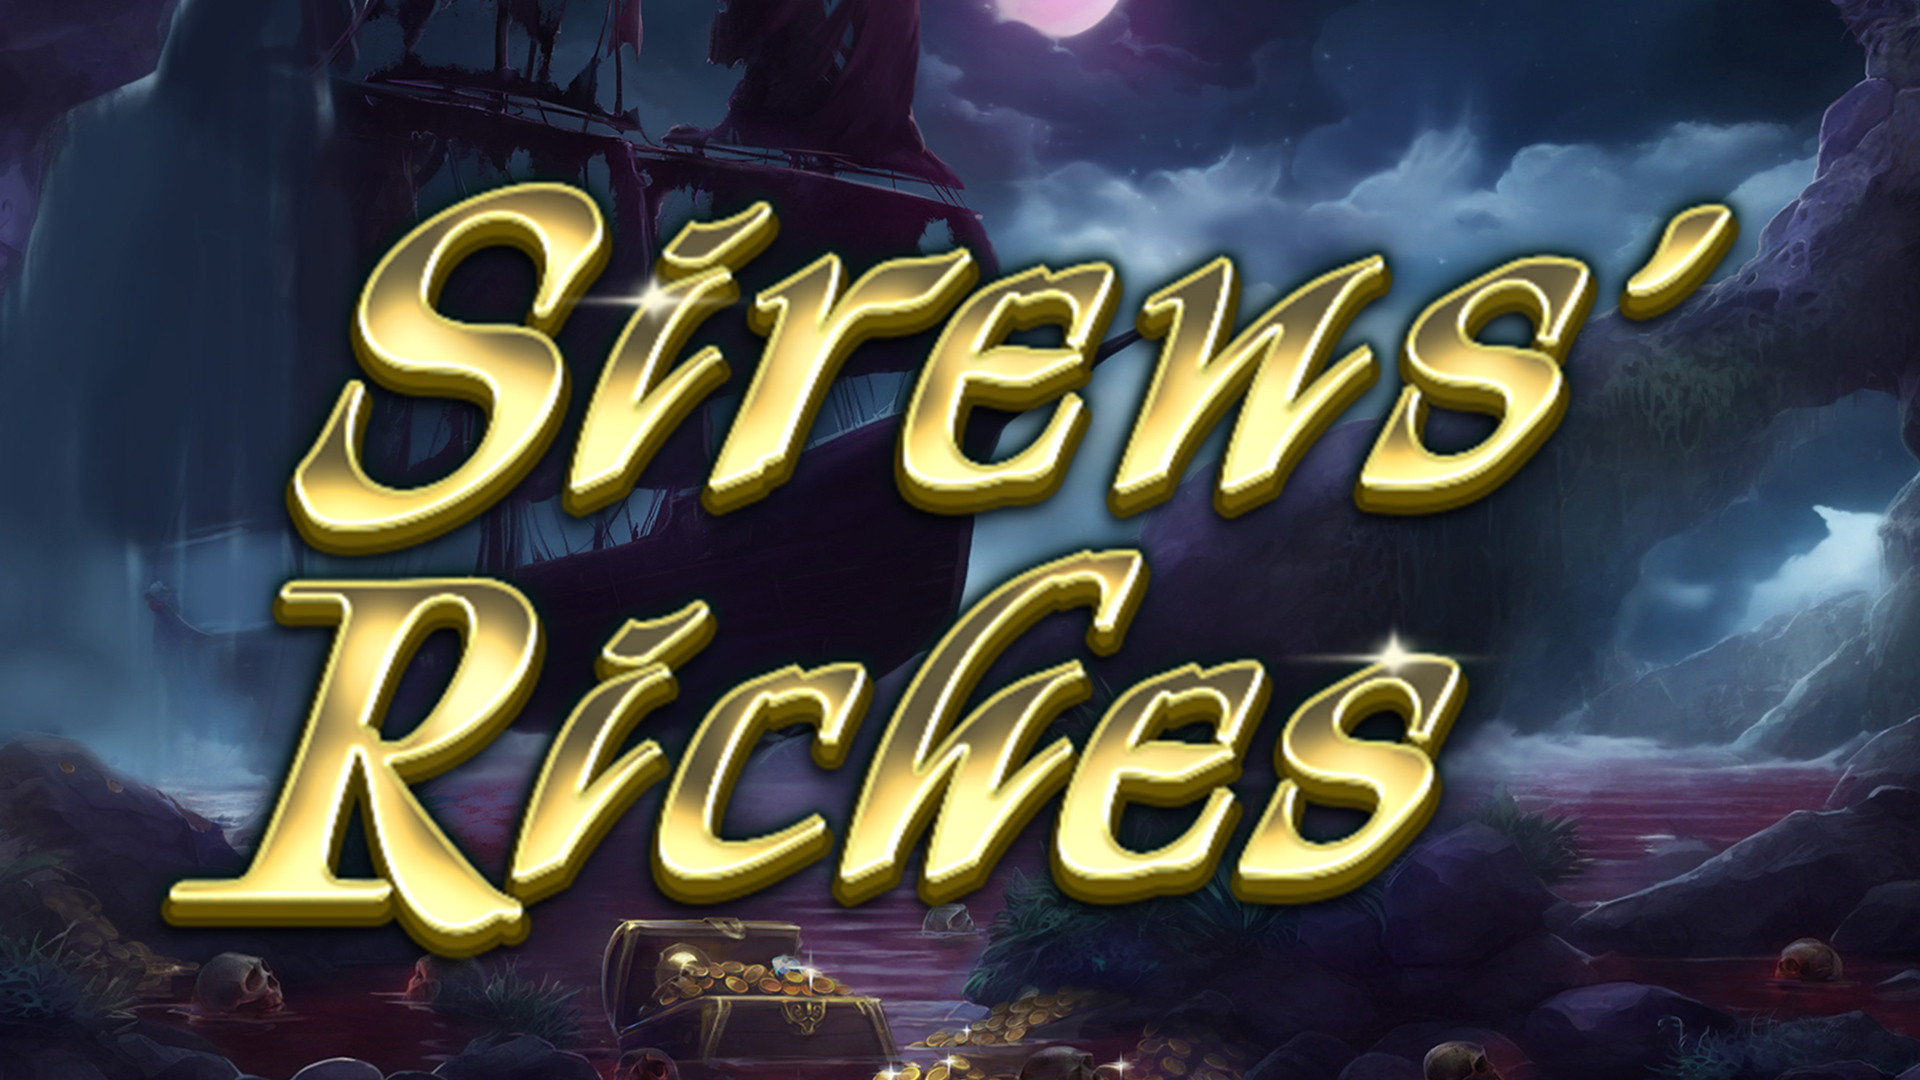 Siren's Riches